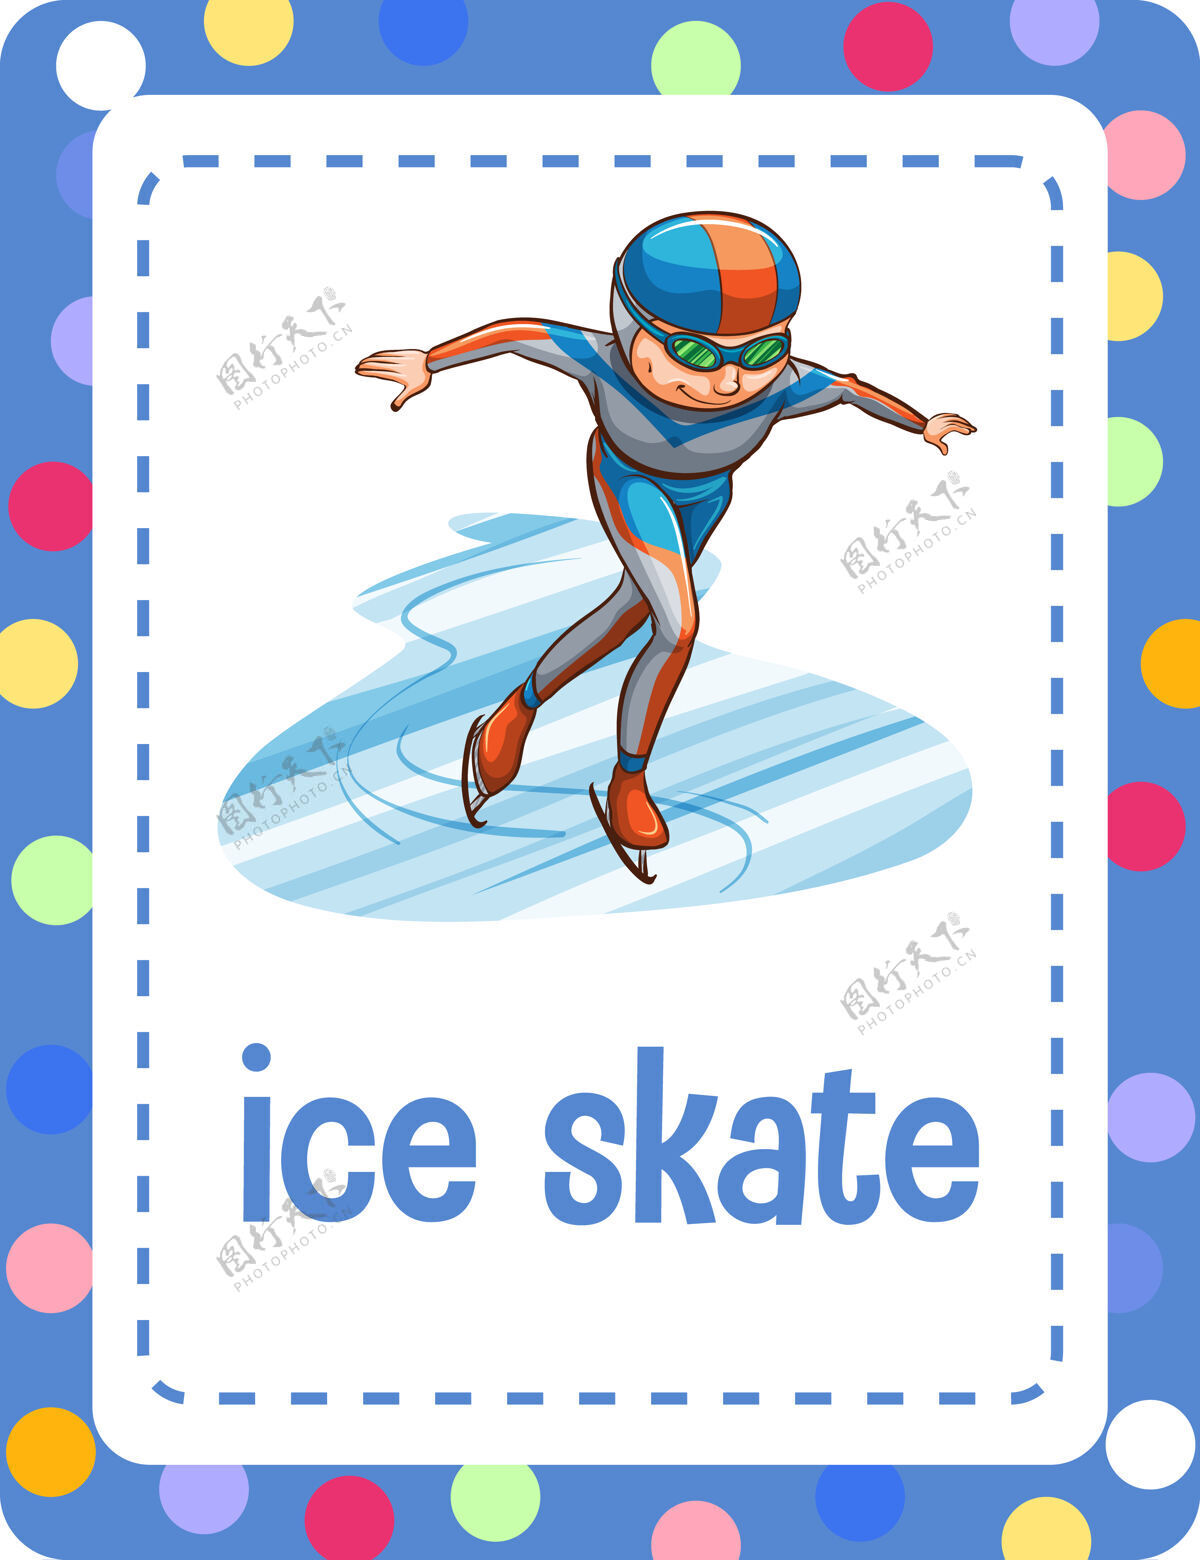 英语词汇抽认卡与单词溜冰语言学卡通幼儿园